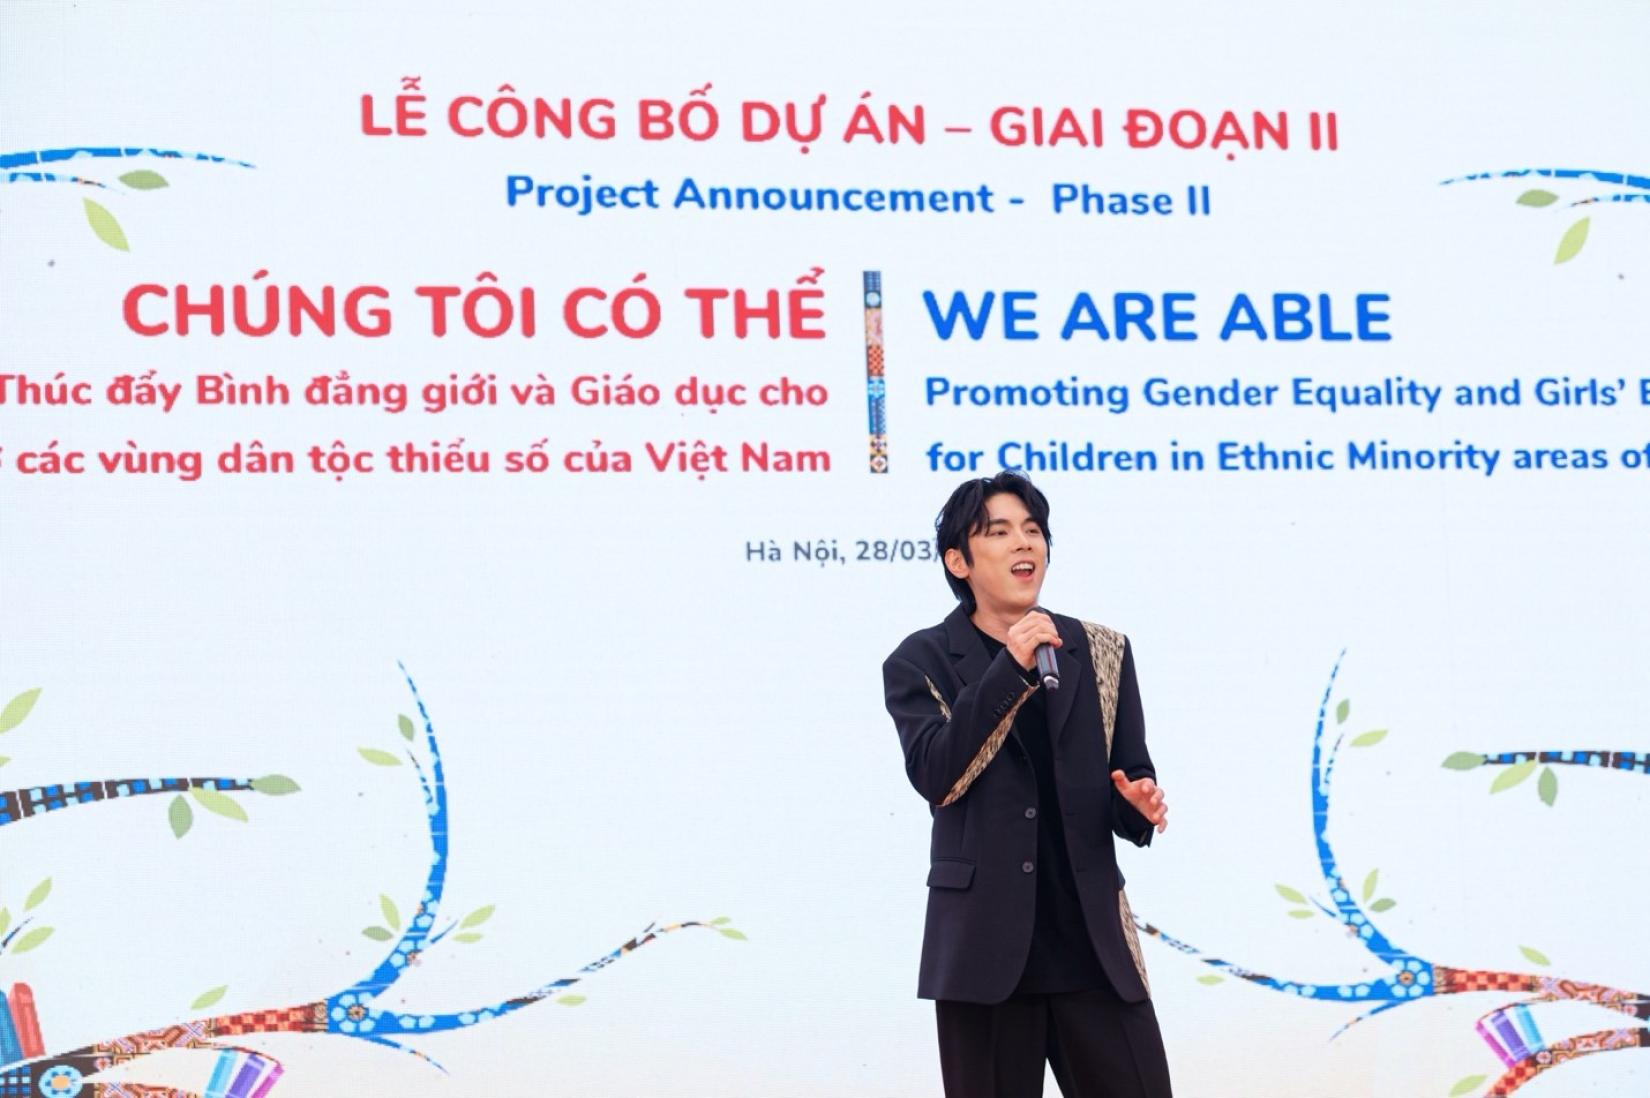 Korean singer, Isaac Hong, performing at the event